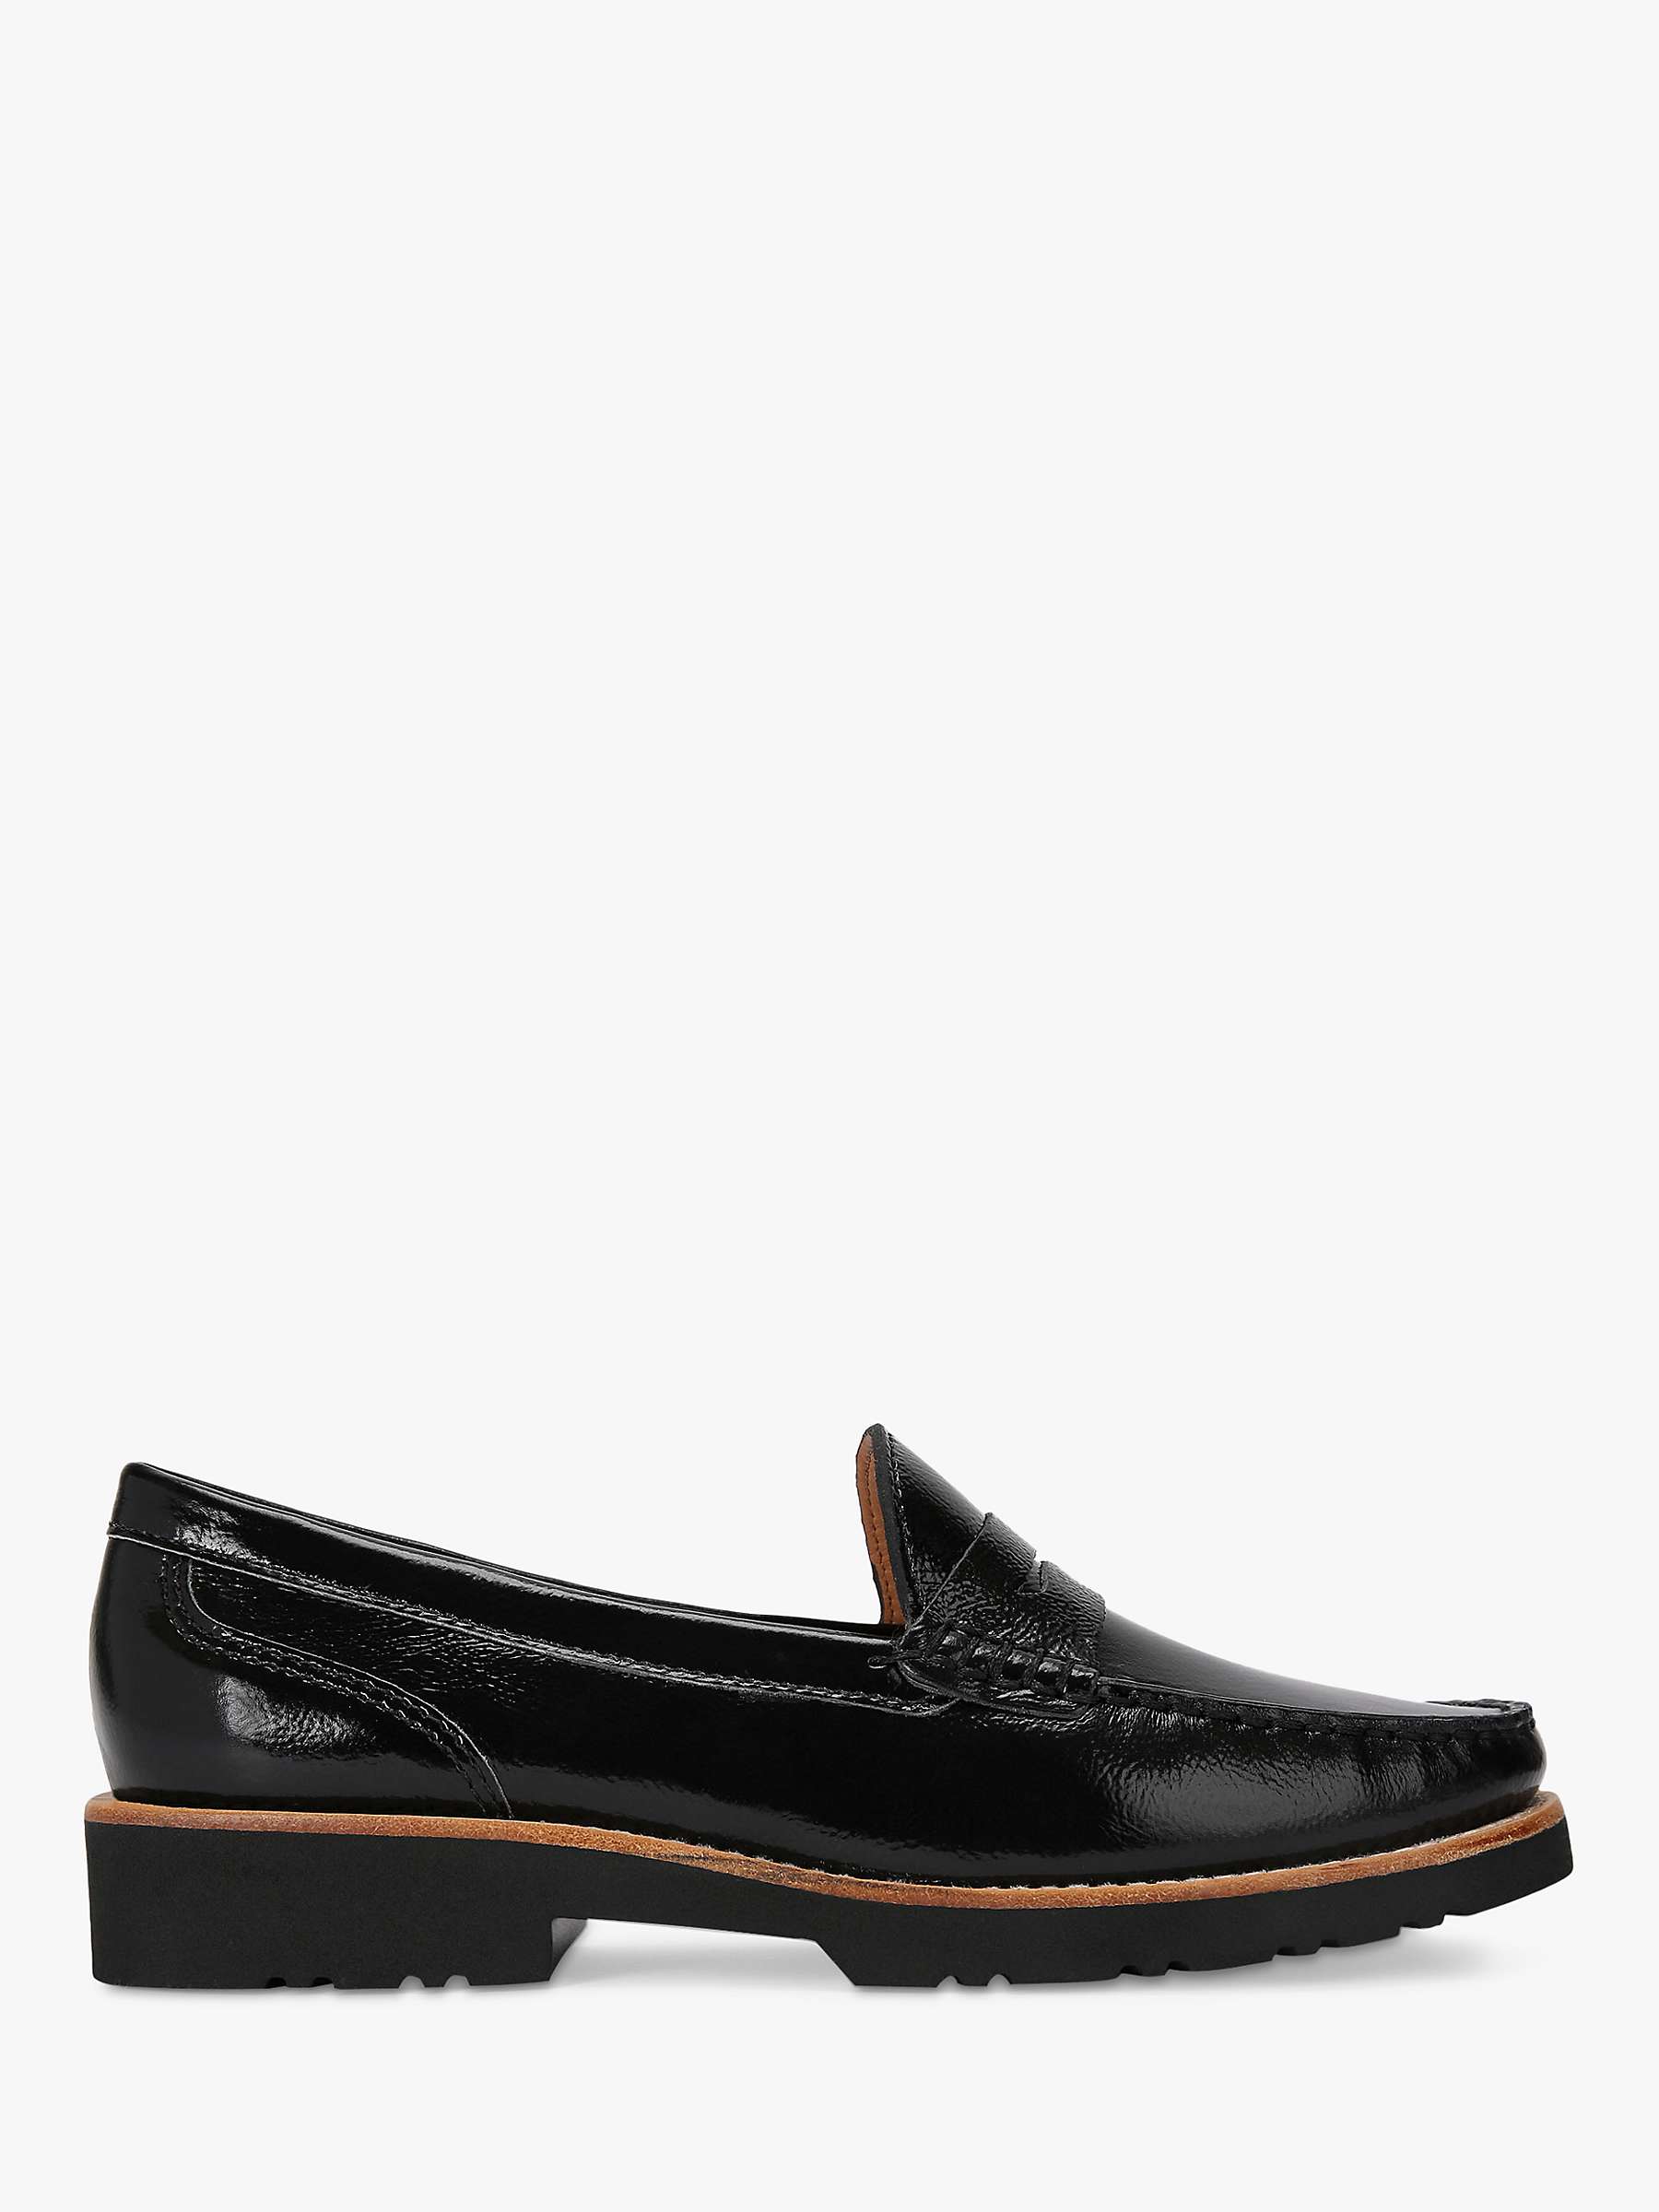 Buy KG Kurt Geiger Melody Leather Loafers, Black Online at johnlewis.com